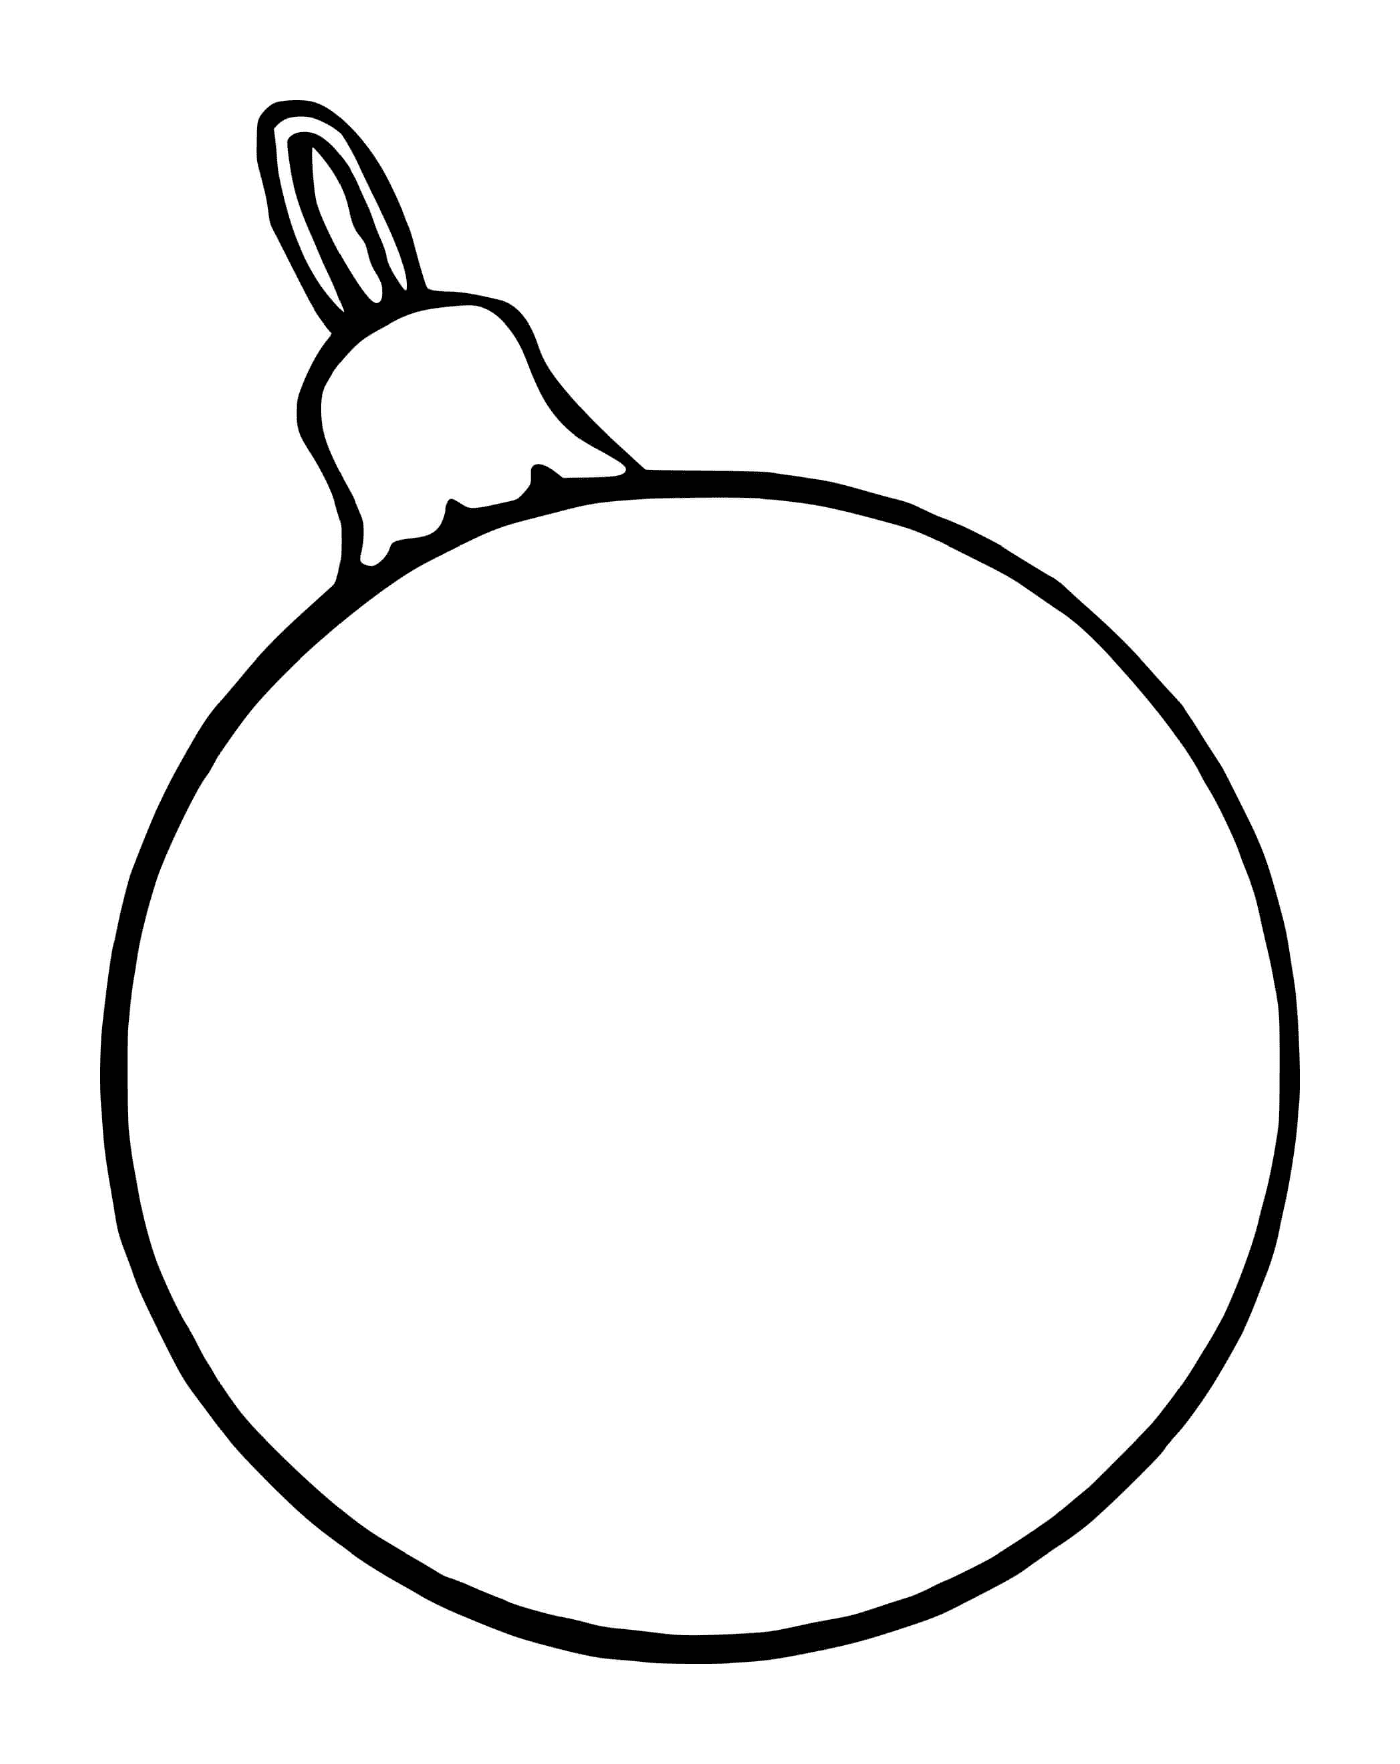  एक छोटी - सी क्रिसमस की गेंद एक पेड़ के लिए जिसके ऊपर सेब लगा हुआ है 